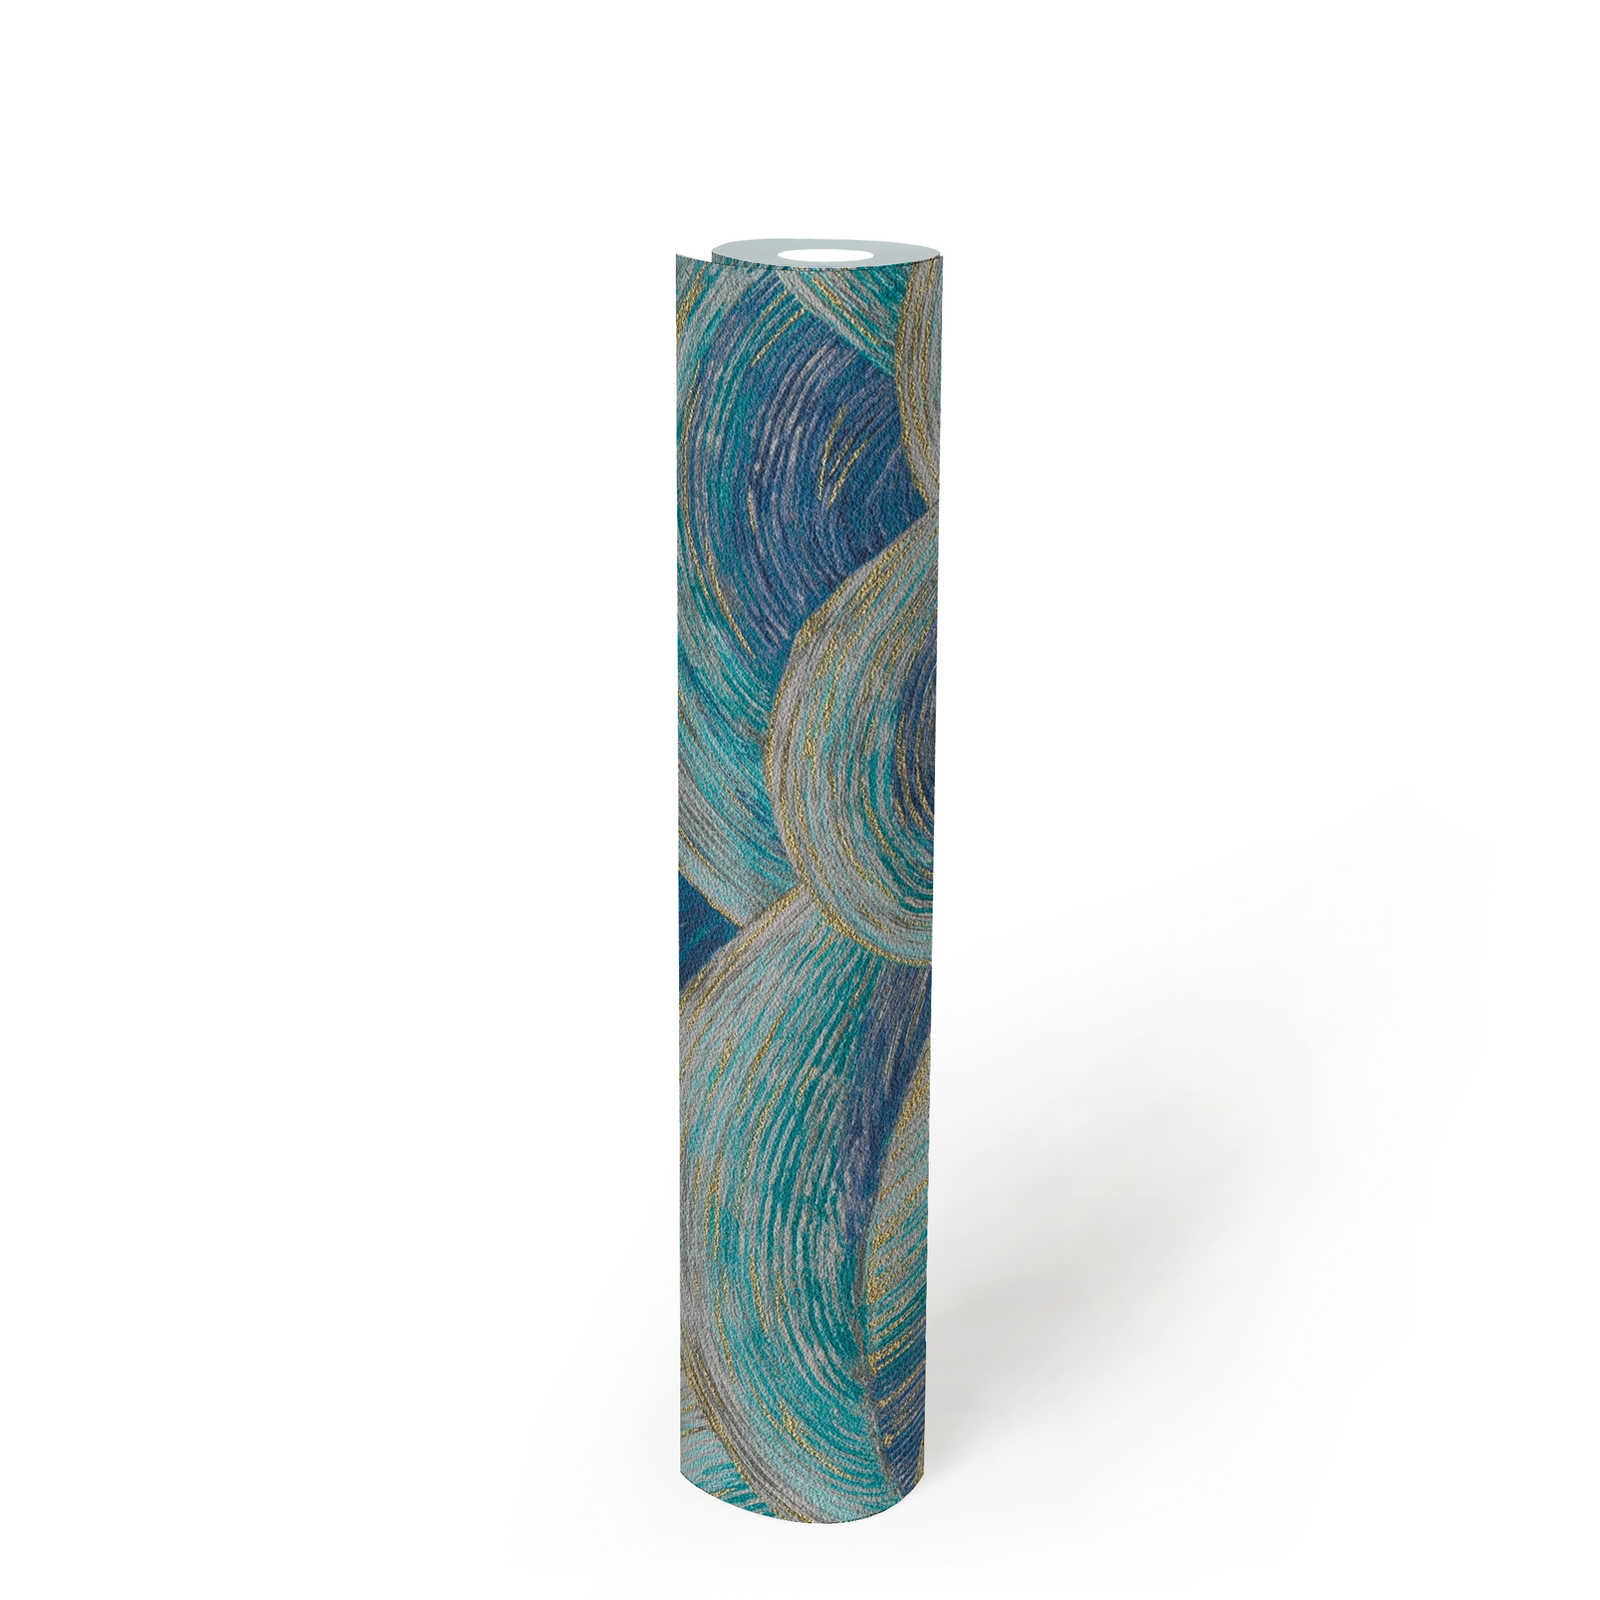             Abstrakte Vliestapete mit Wellenmuster & Glanzeffekt – Blau, Türkis, Gold
        